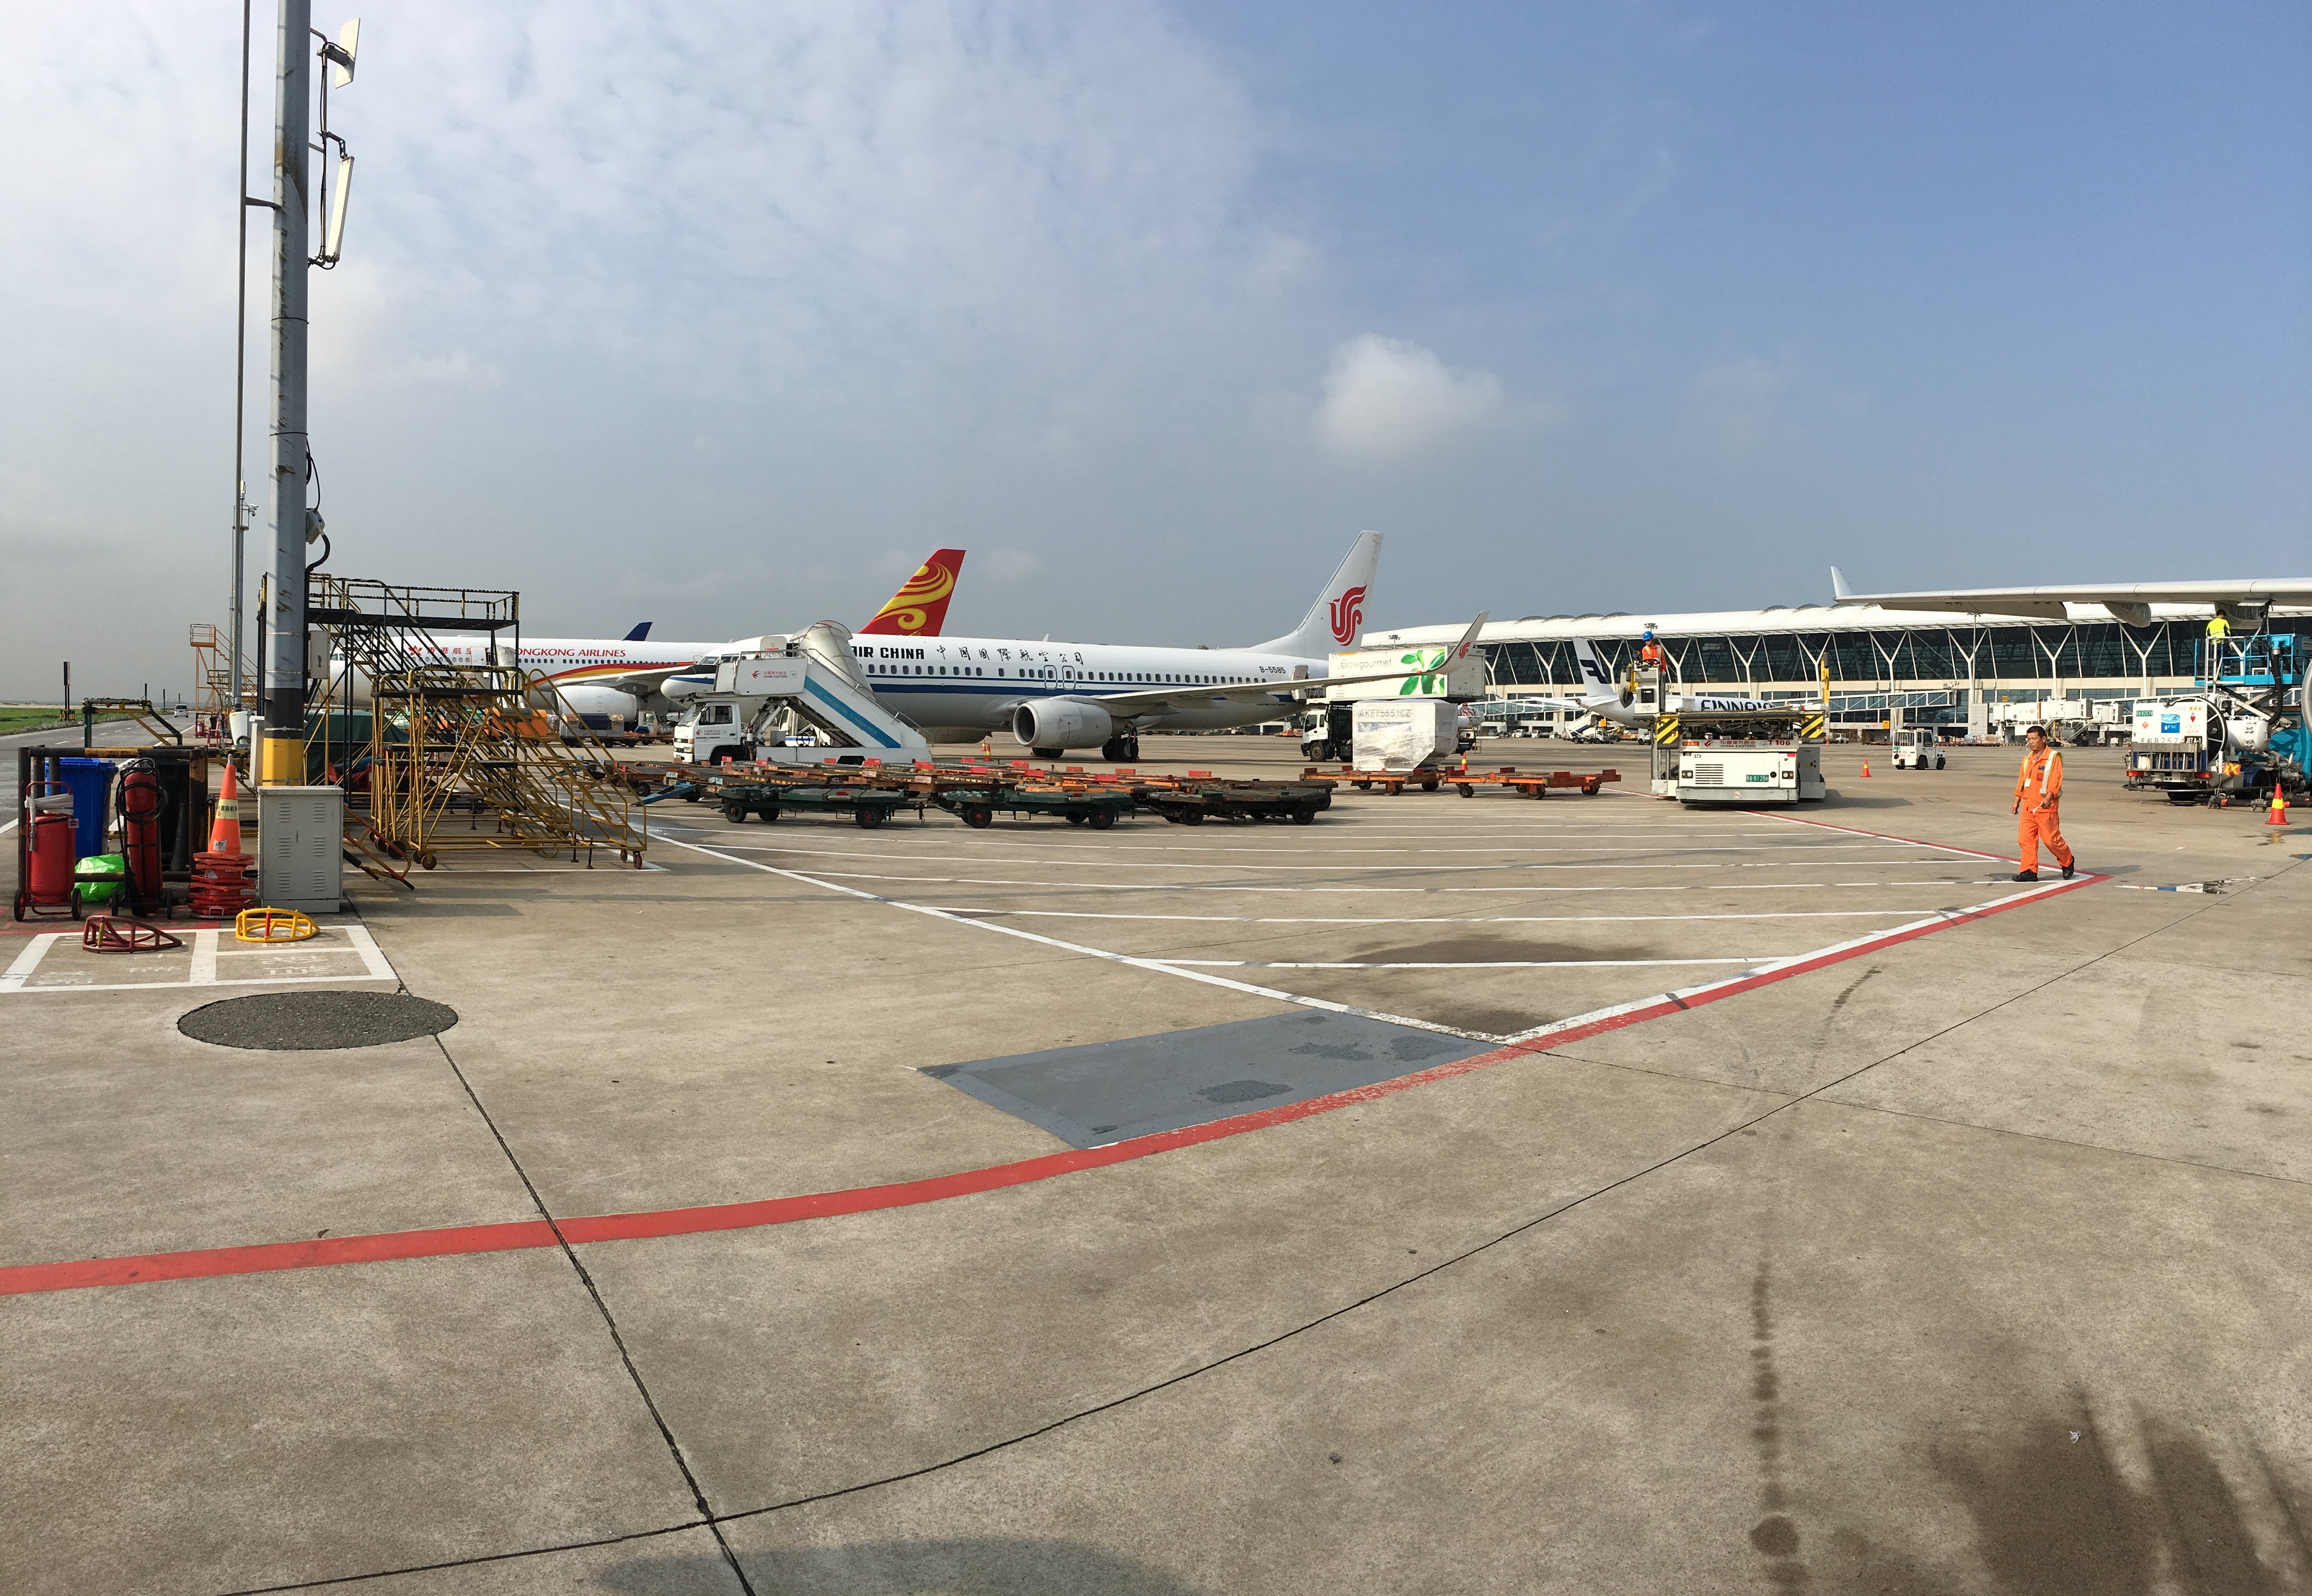 SHANG HAI AIRPORT